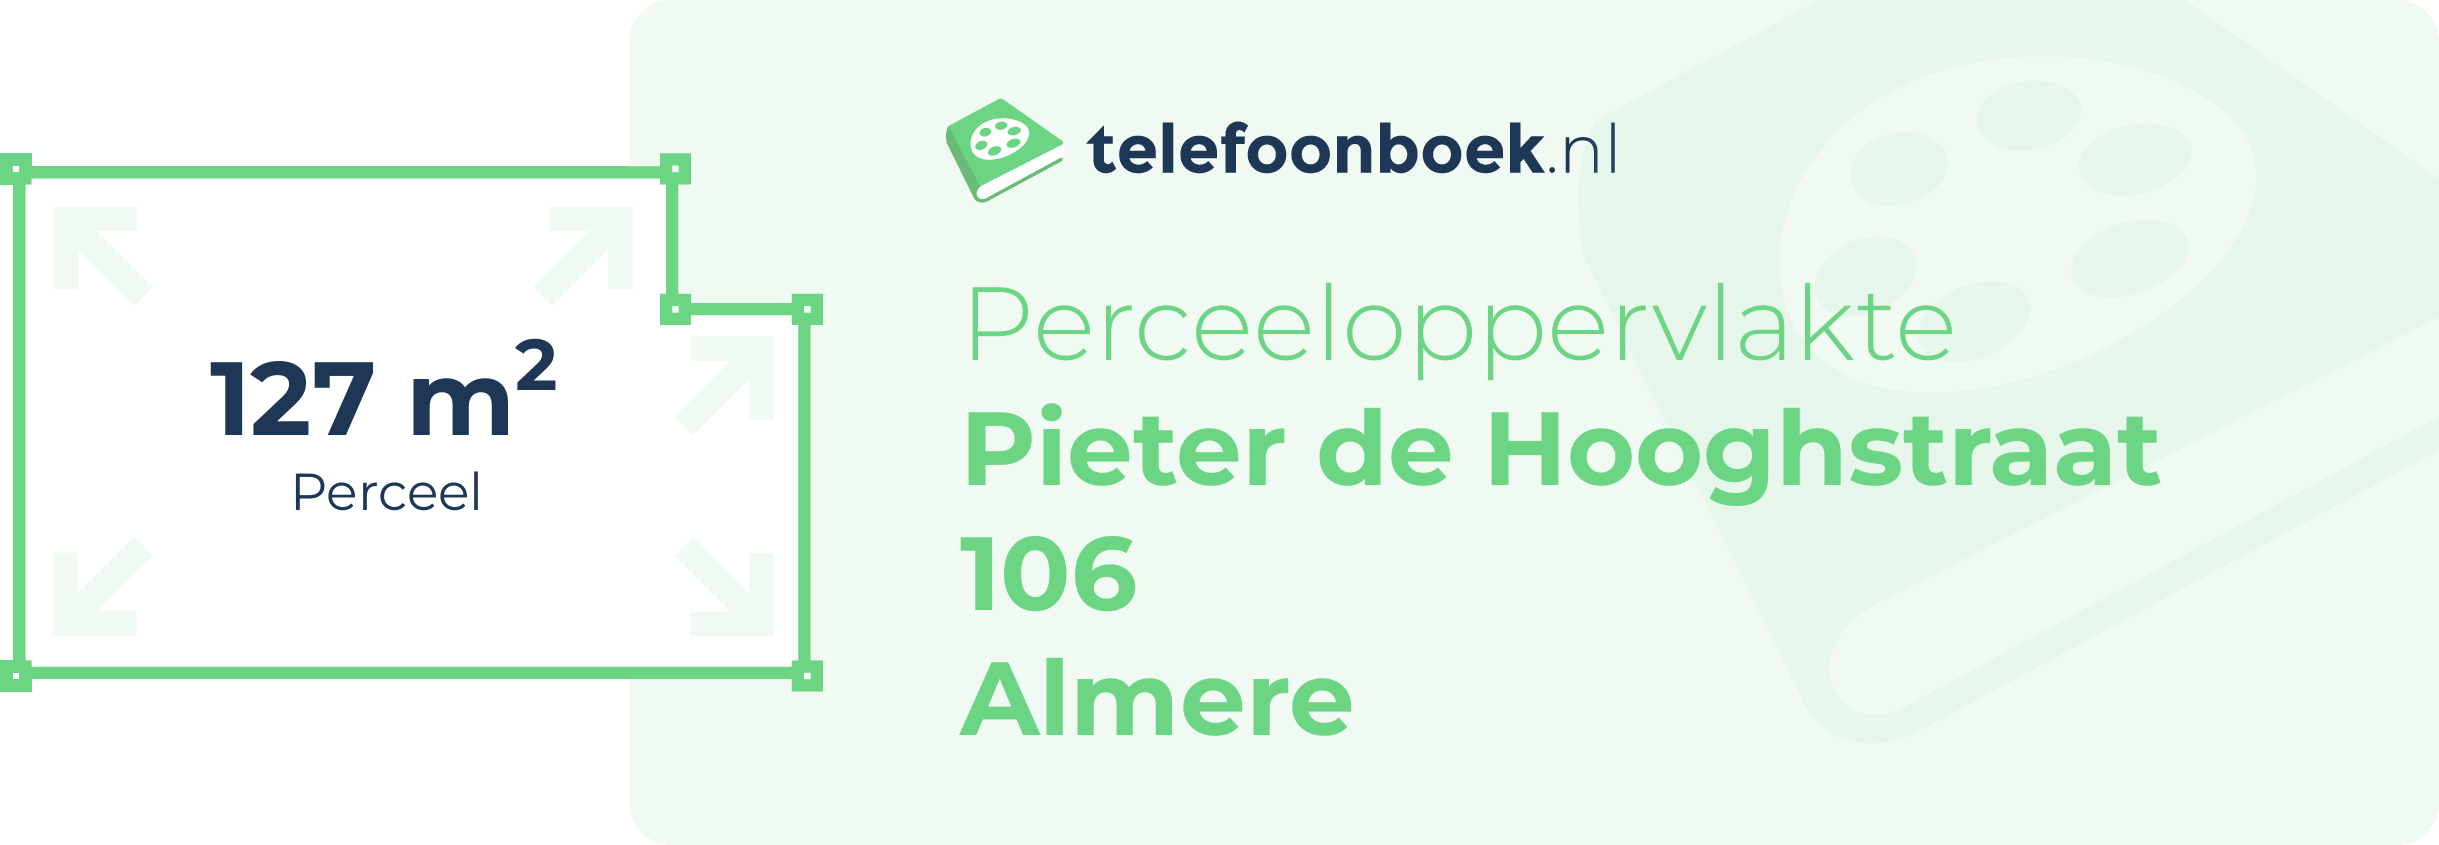 Perceeloppervlakte Pieter De Hooghstraat 106 Almere